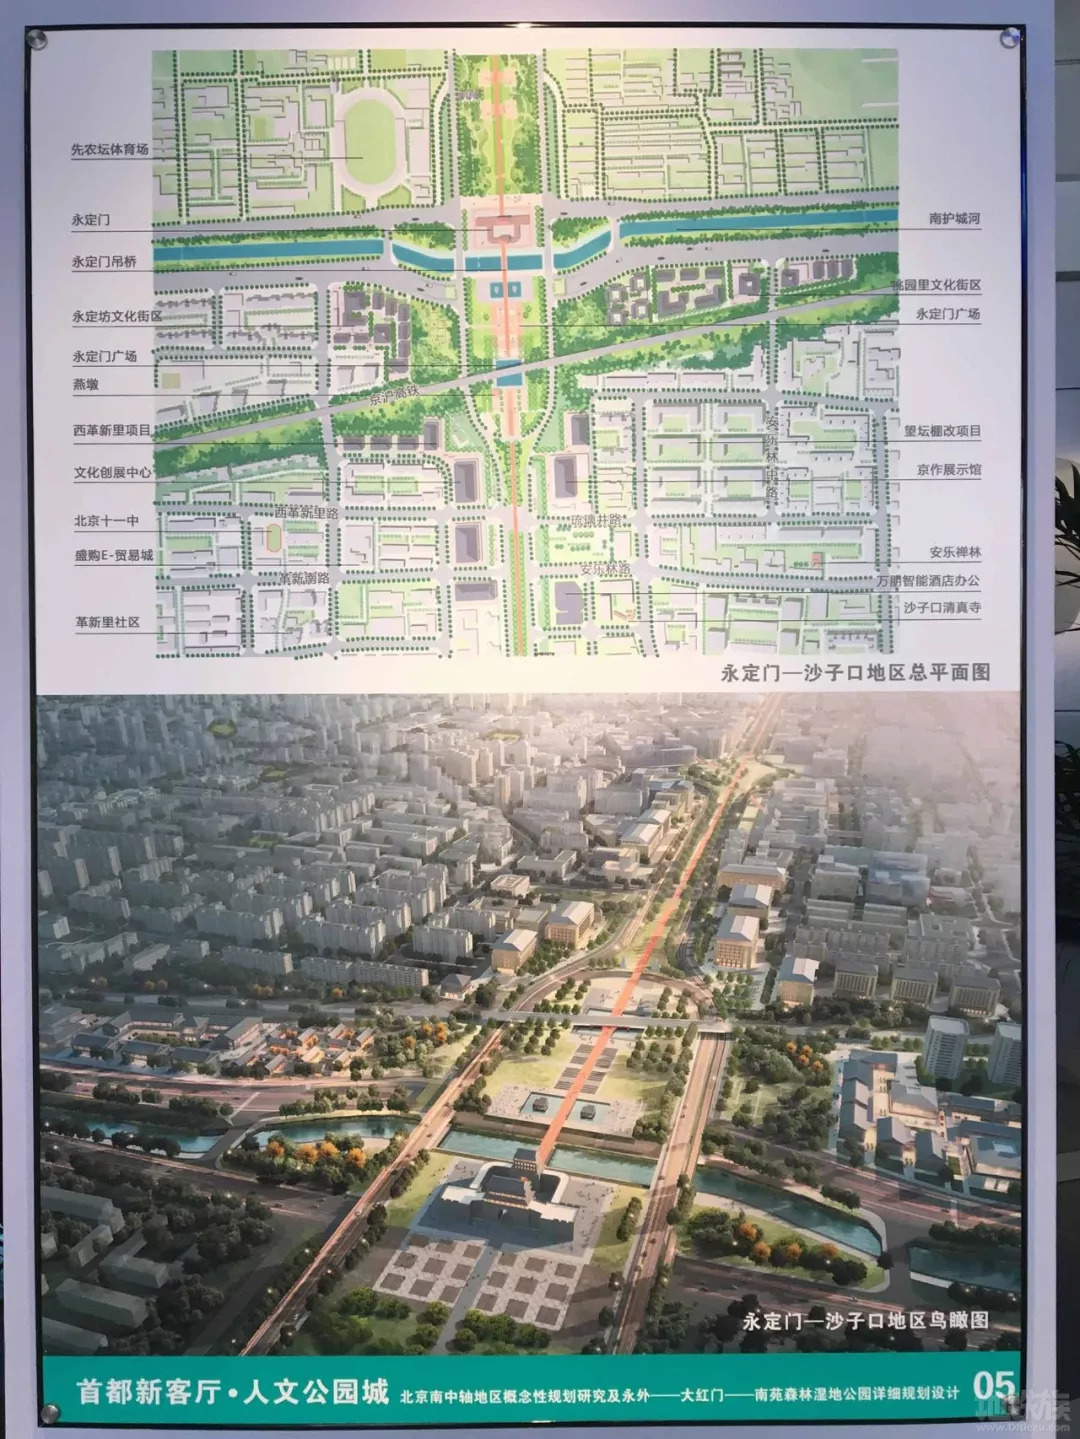 北京南中轴规划五大方案高清图!